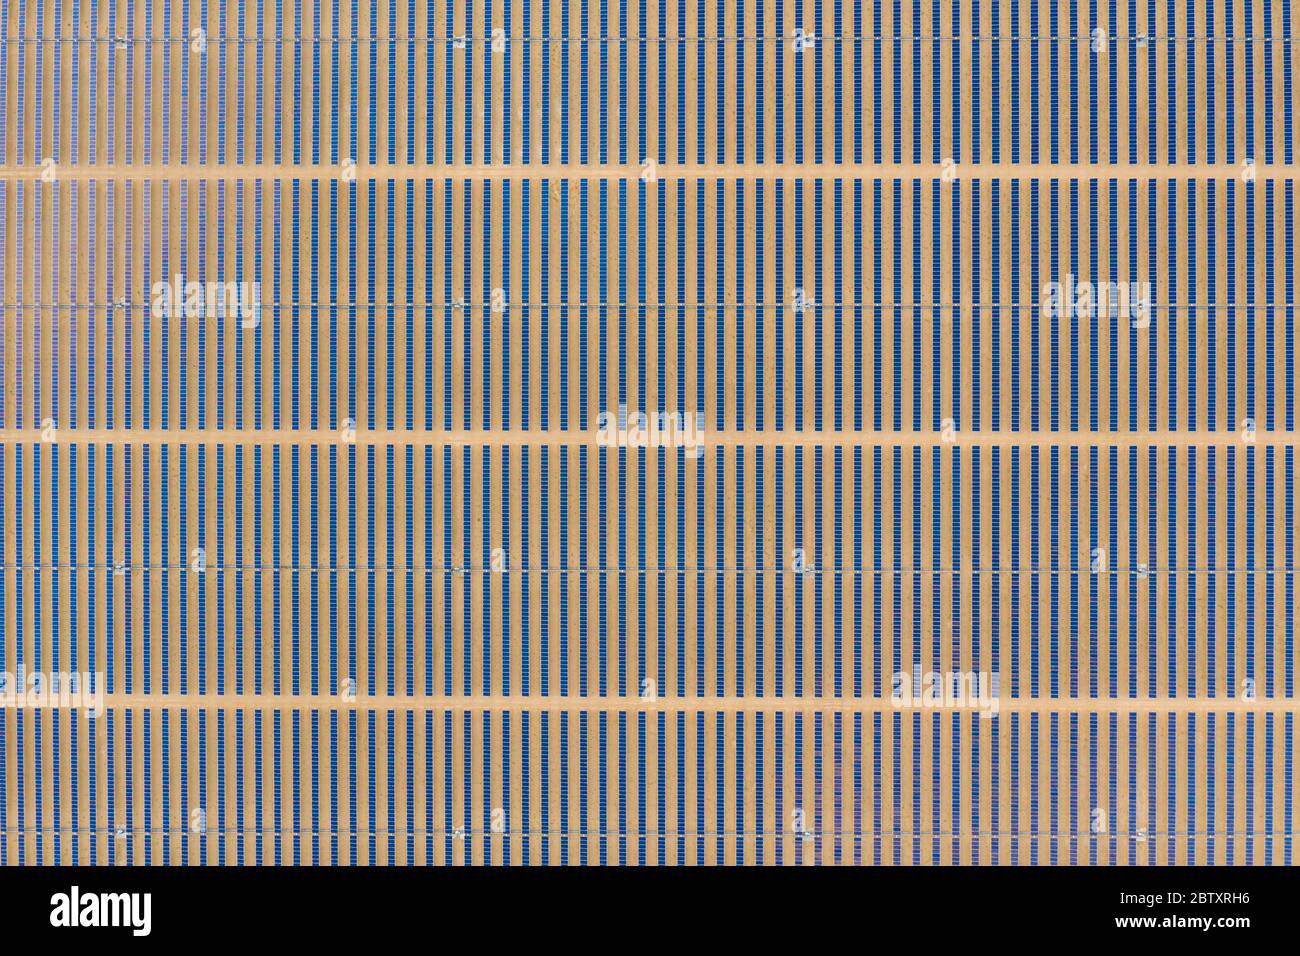 Vue aérienne verticale d'une ferme de panneaux solaires photovoltaïques produisant une énergie renouvelable durable dans une centrale électrique désertique. Banque D'Images